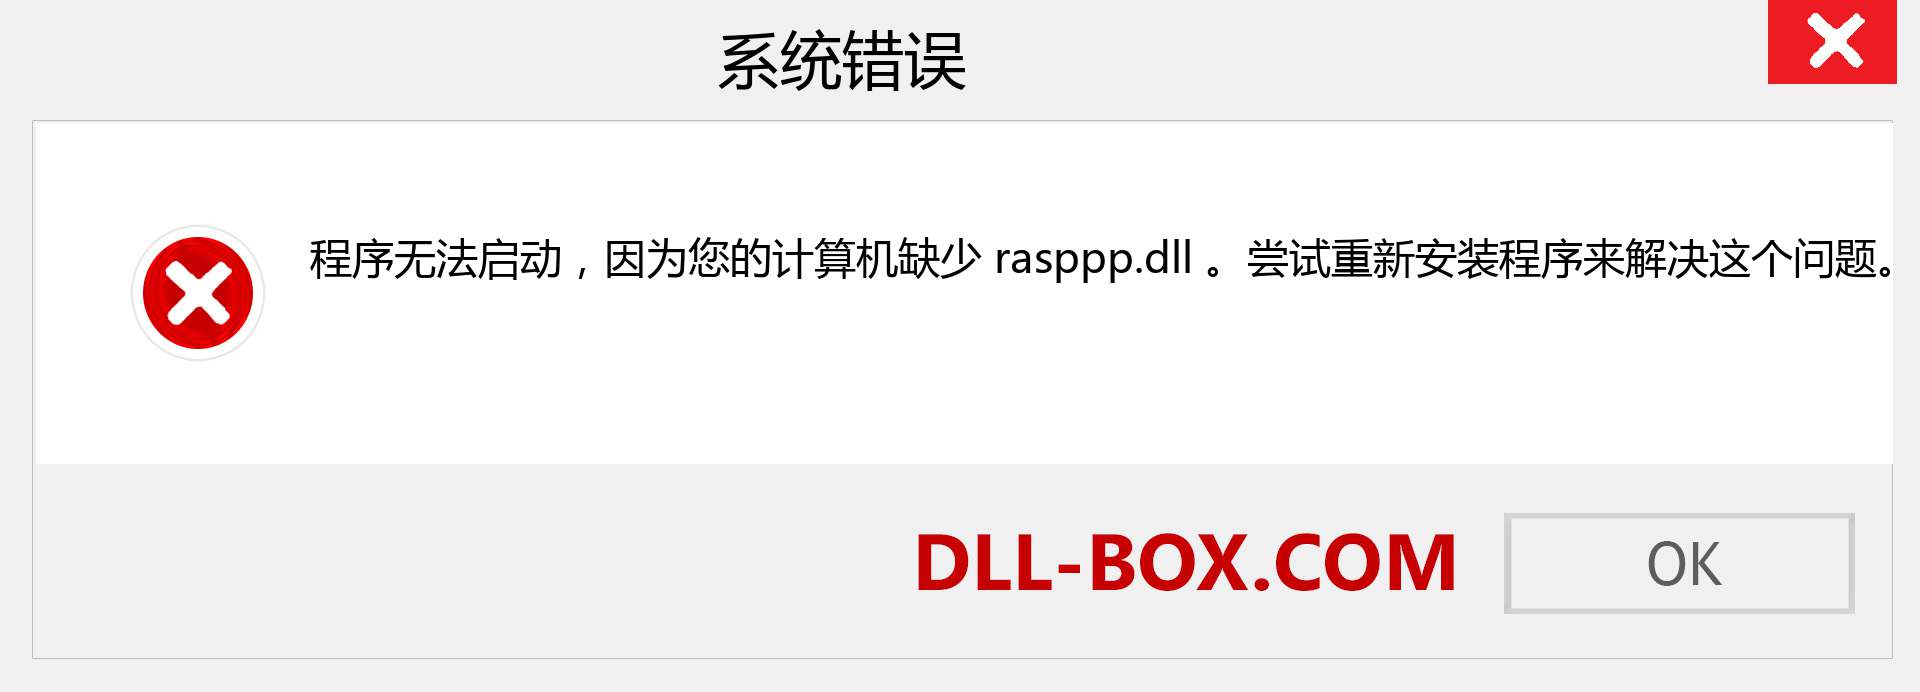 rasppp.dll 文件丢失？。 适用于 Windows 7、8、10 的下载 - 修复 Windows、照片、图像上的 rasppp dll 丢失错误